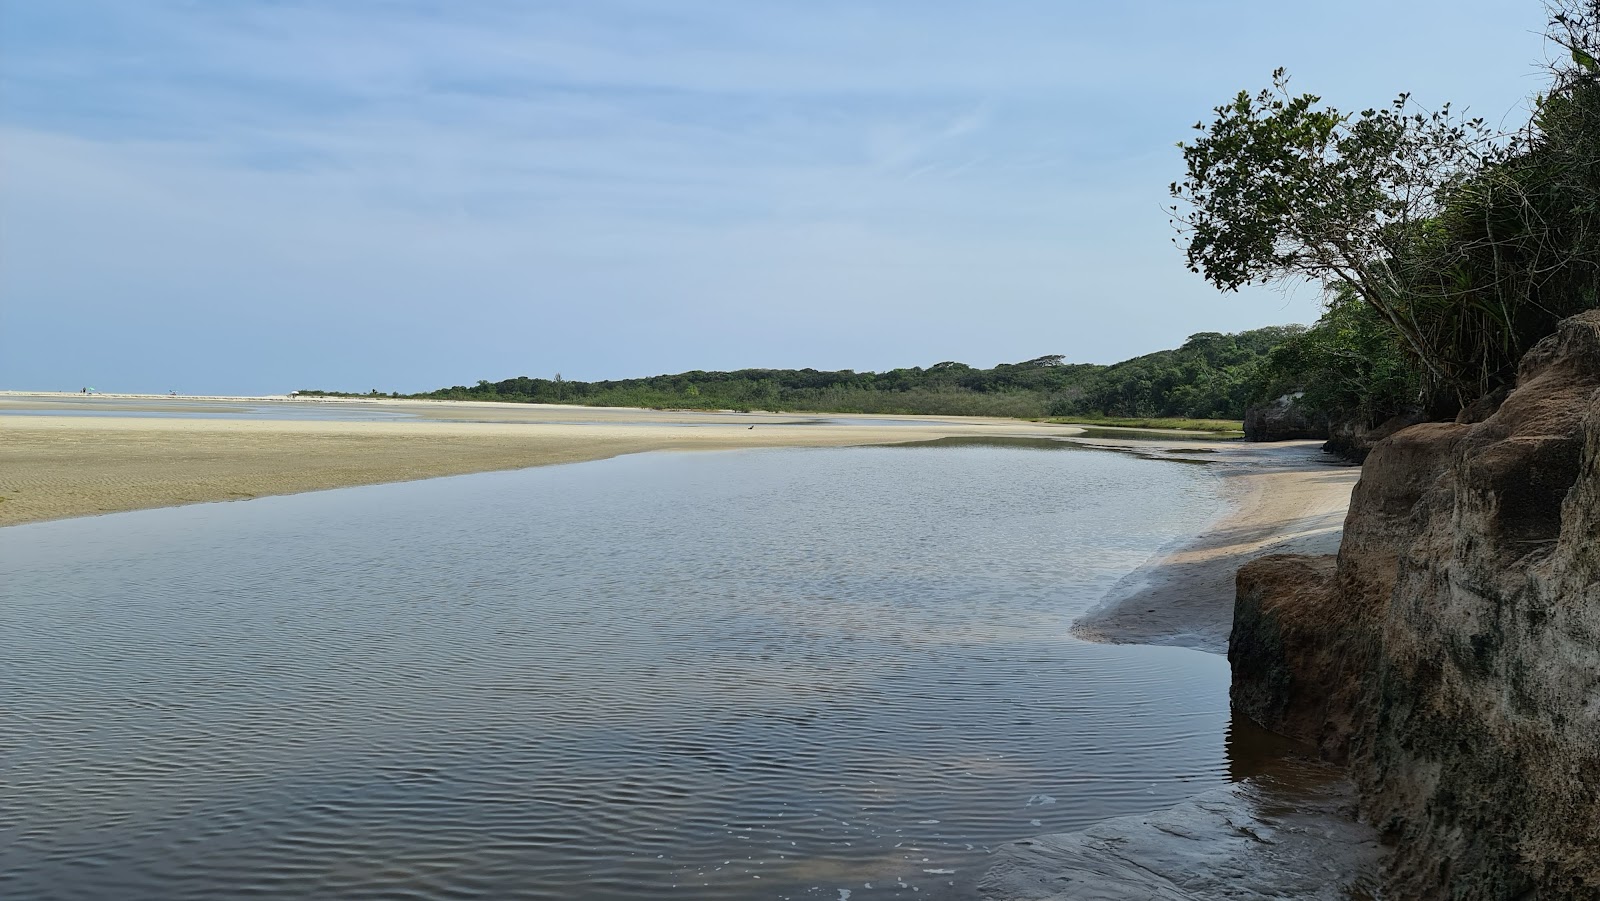 Fotografie cu Plaża Rio Itaguare - locul popular printre cunoscătorii de relaxare